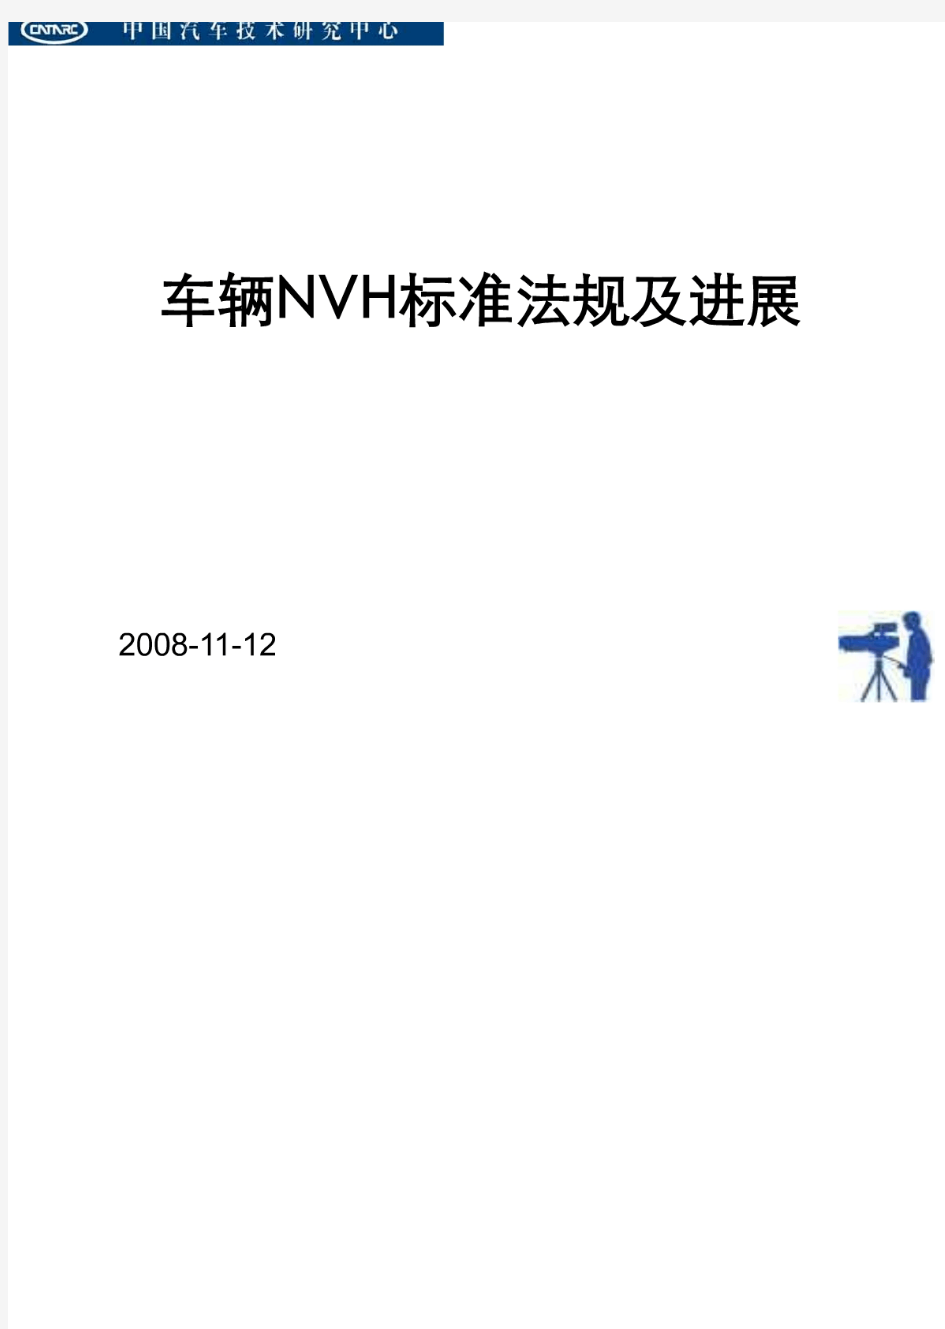 汽车NVH标准法规现状及发展